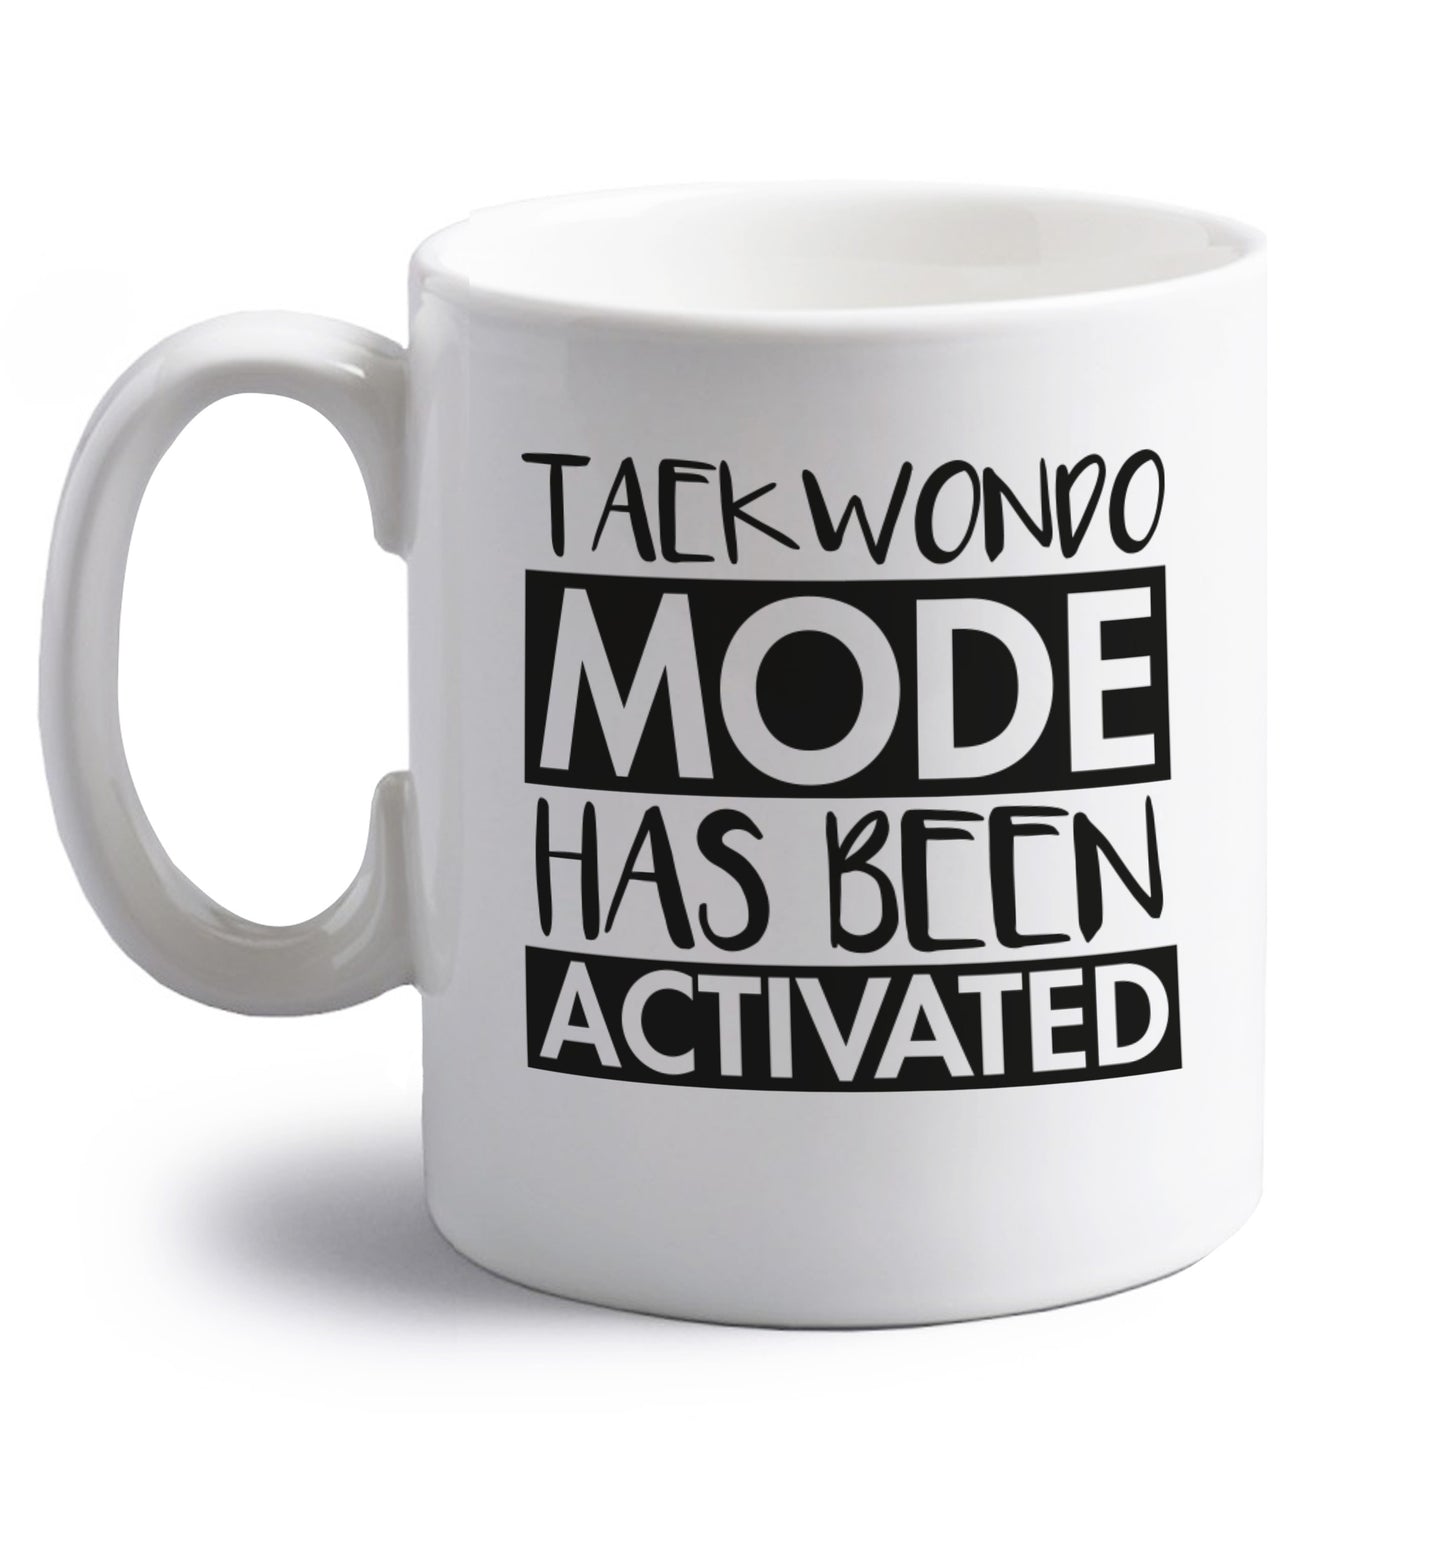 Taekwondo mode activated right handed white ceramic mug 